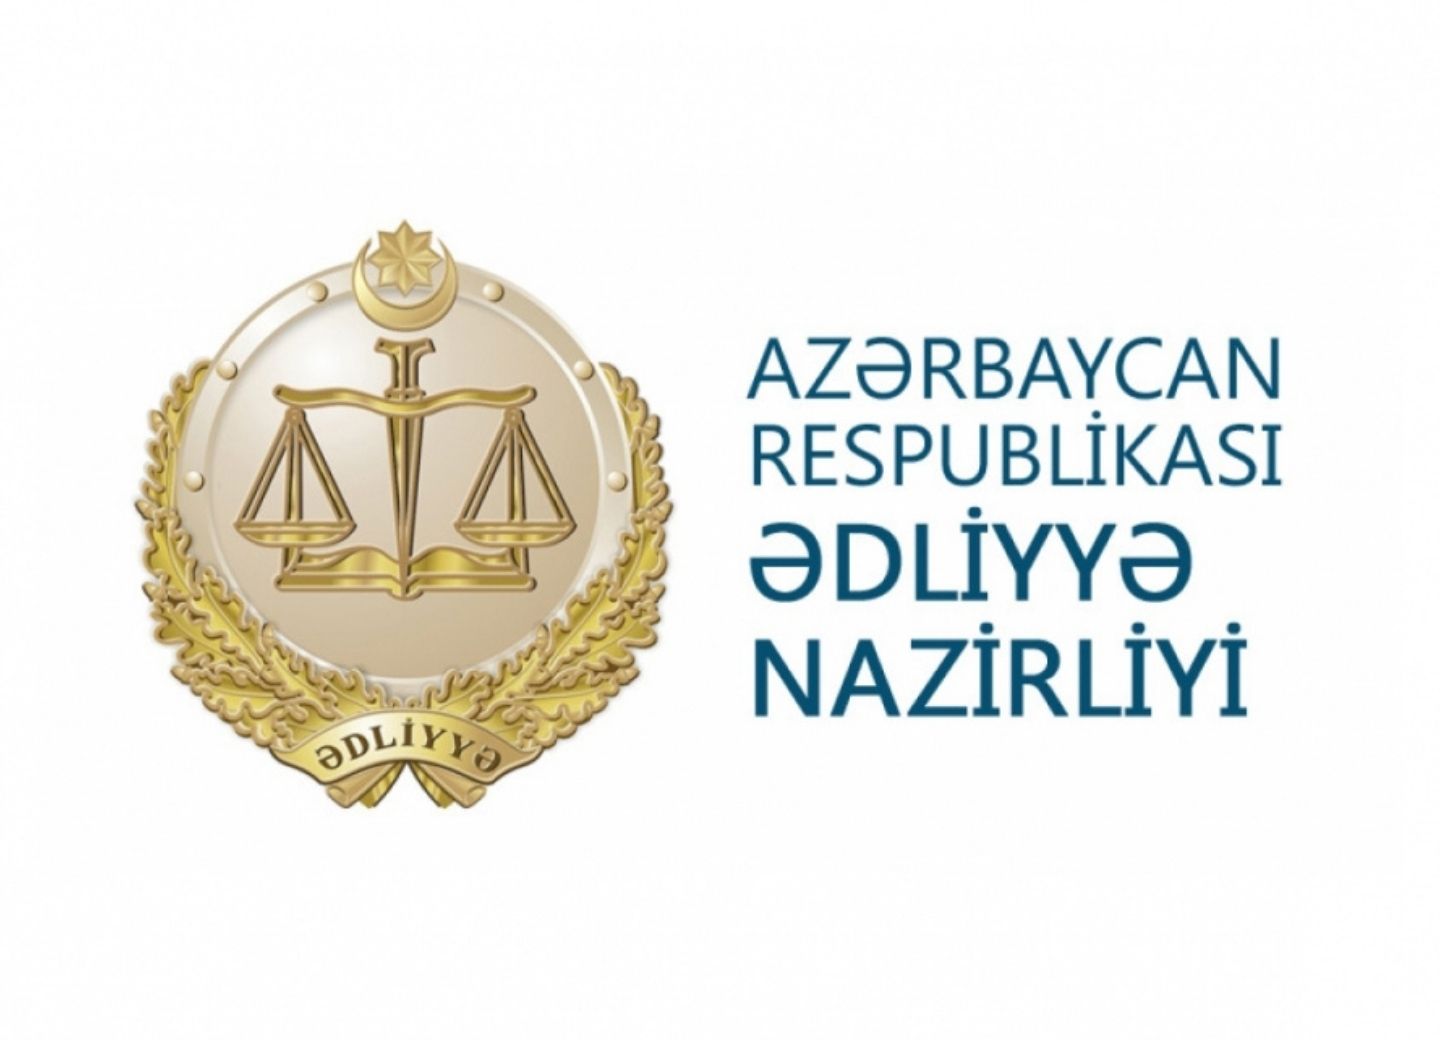 В органы юстиции 70 государств направлены обращения о военных преступлениях Армении против Азербайджана